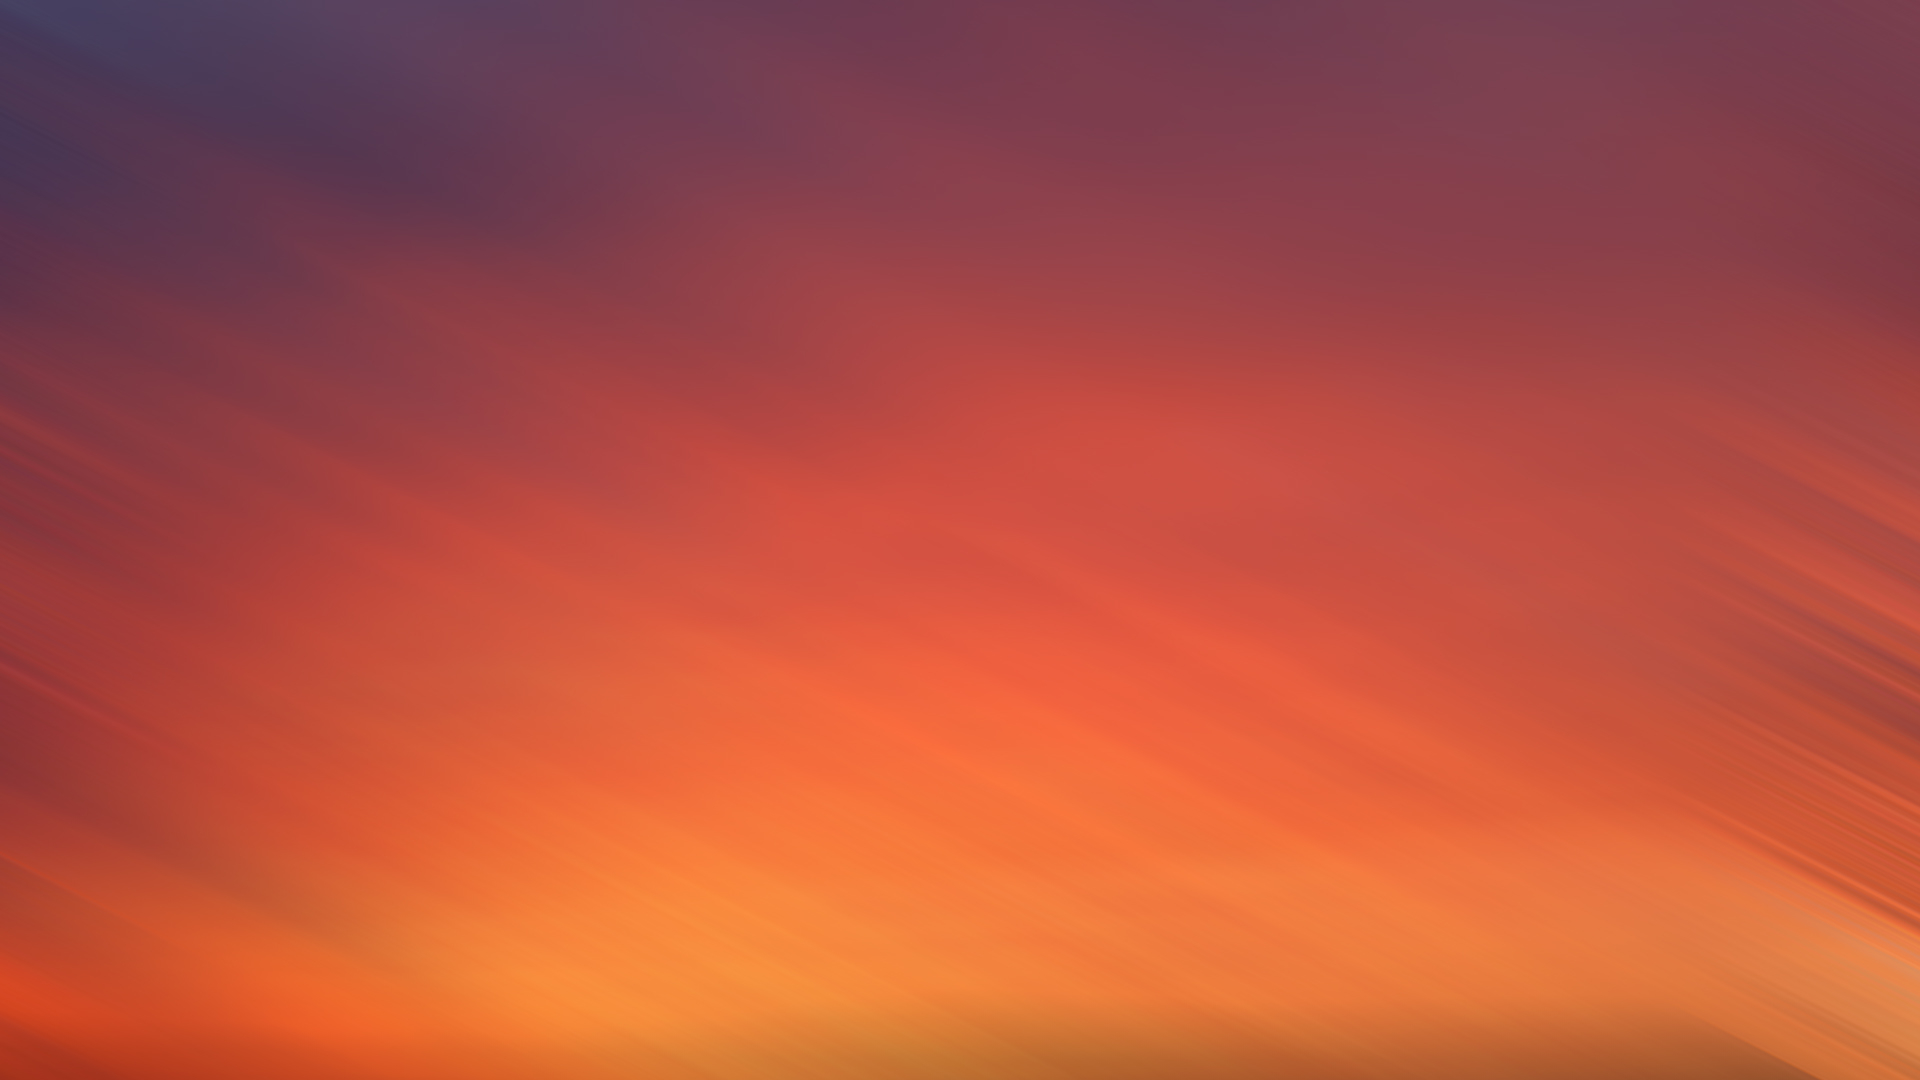 desenfoque de fondo de pantalla,cielo,resplandor crepuscular,rojo,naranja,cielo rojo en la mañana